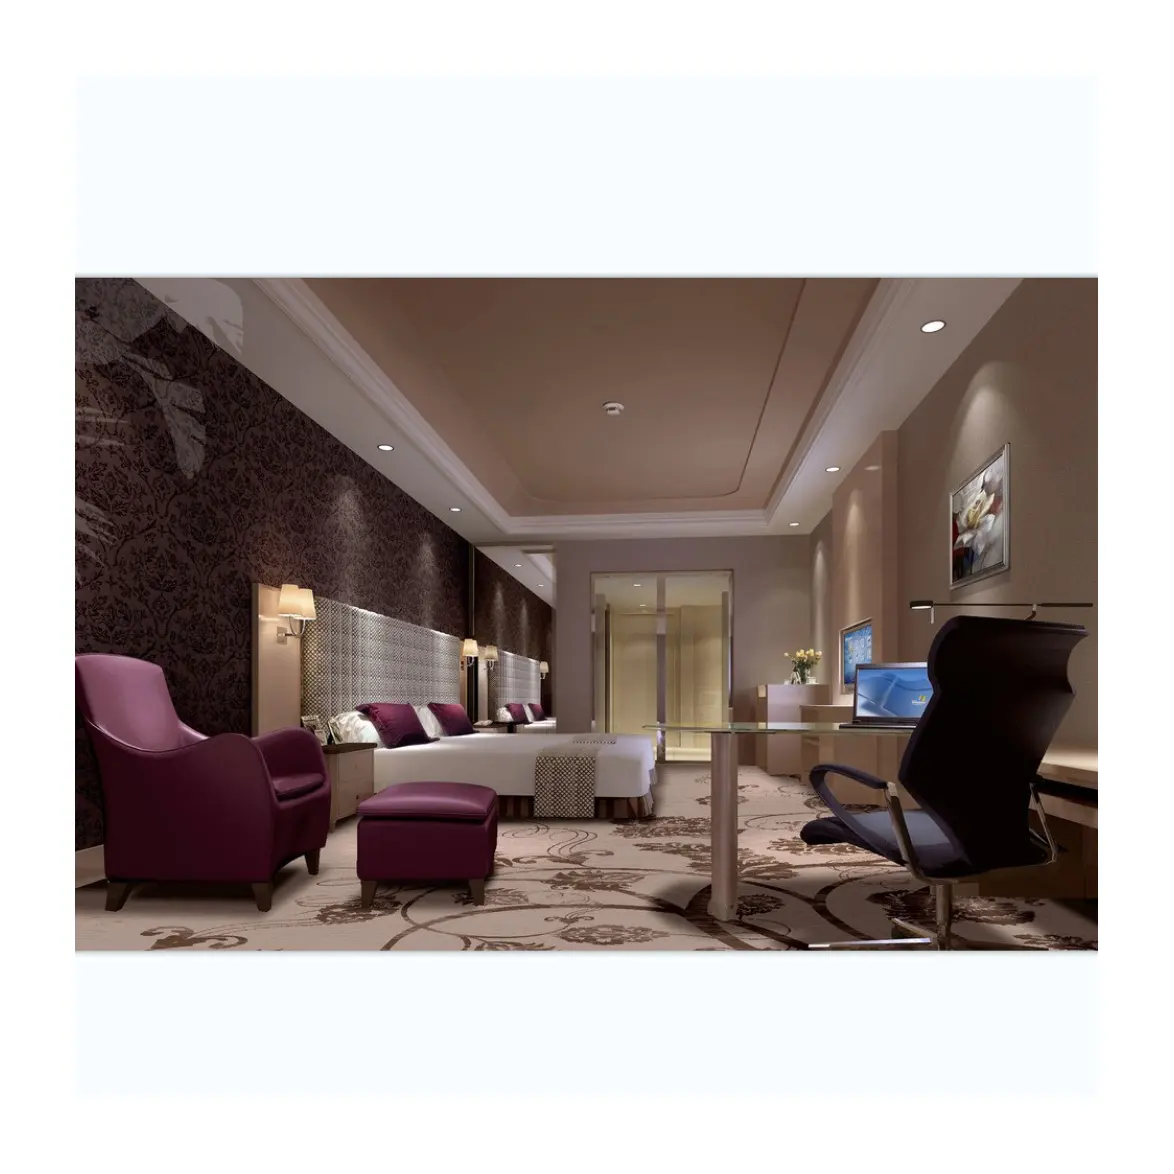 Appartements avec service de design d'intérieur Meubles design Hôtel lounge hall d'entrée Meubles